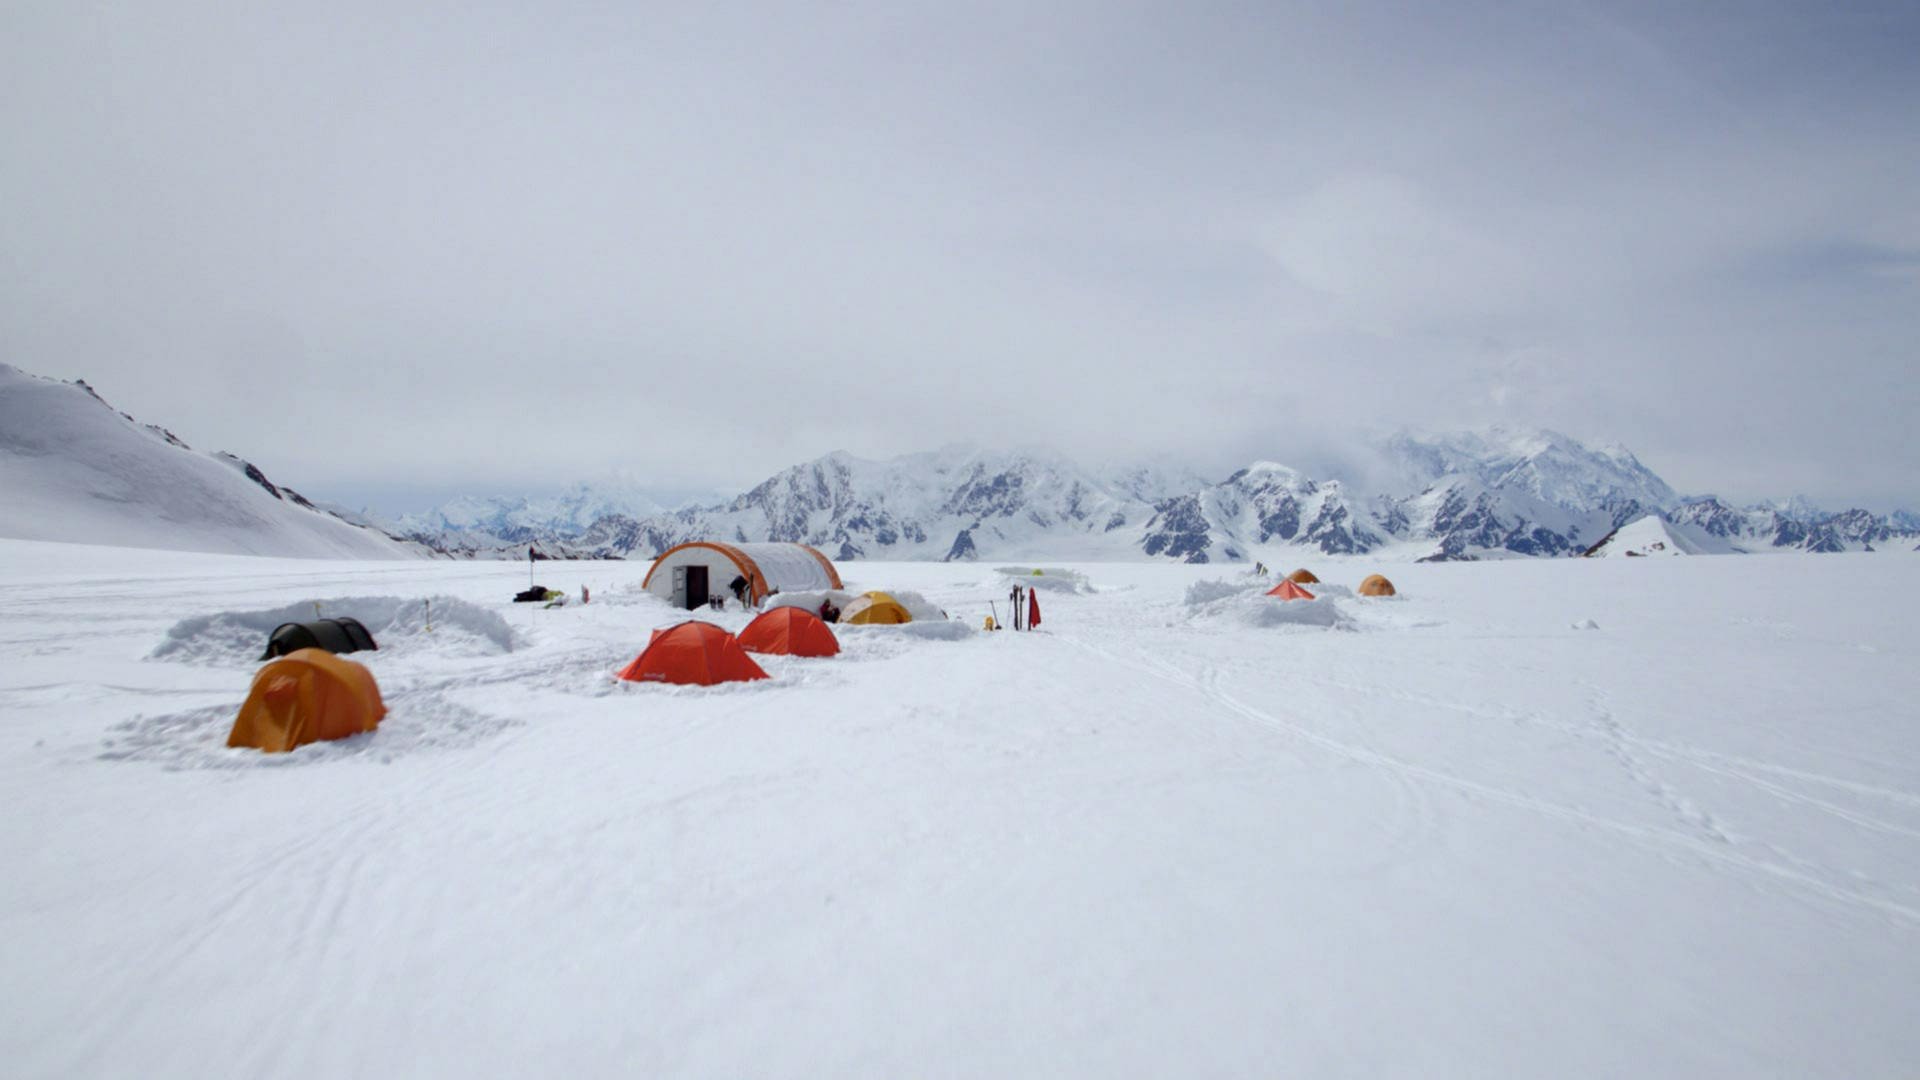 In einer schneebedeckten Ebene stehen einige große und kleine Zelte. Im Hintergrund sind steile, vernebelte Berge zu erkennen. (Foto: WDR)